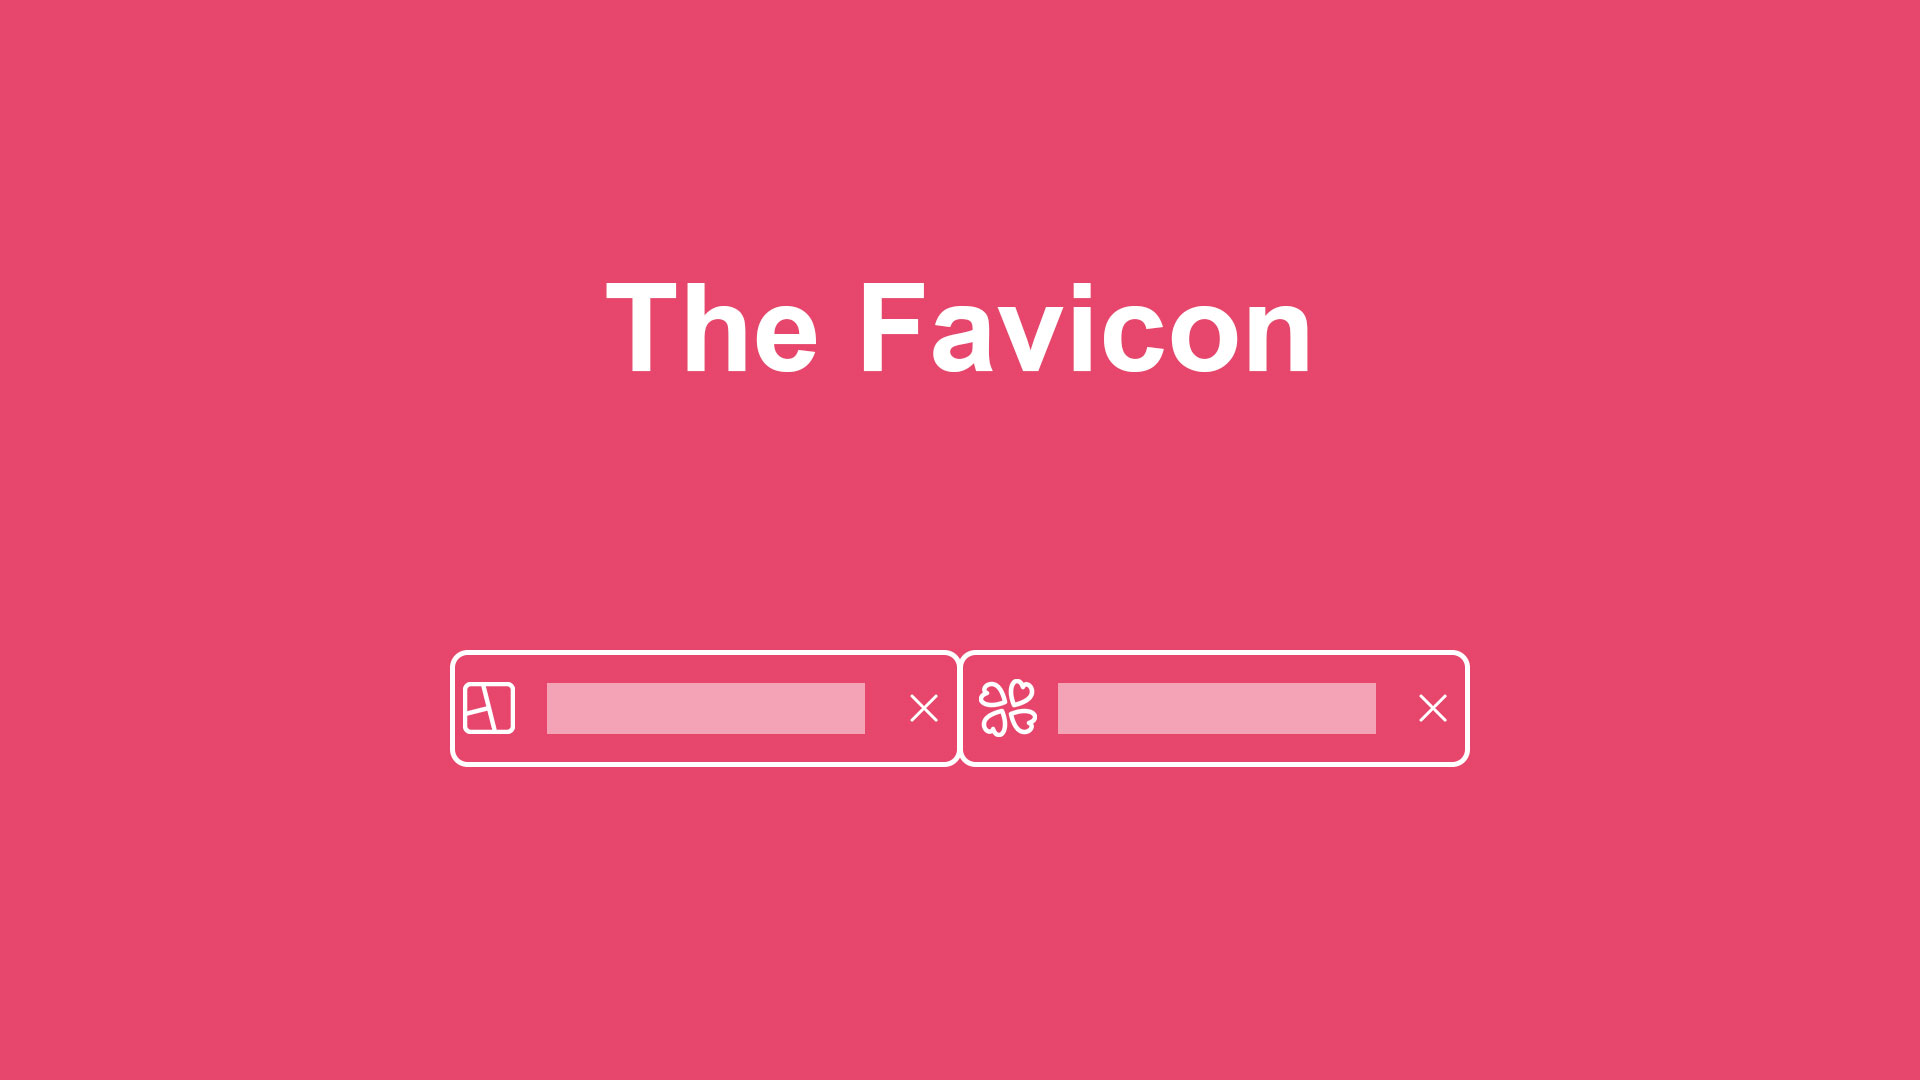 Build trust - The favicon